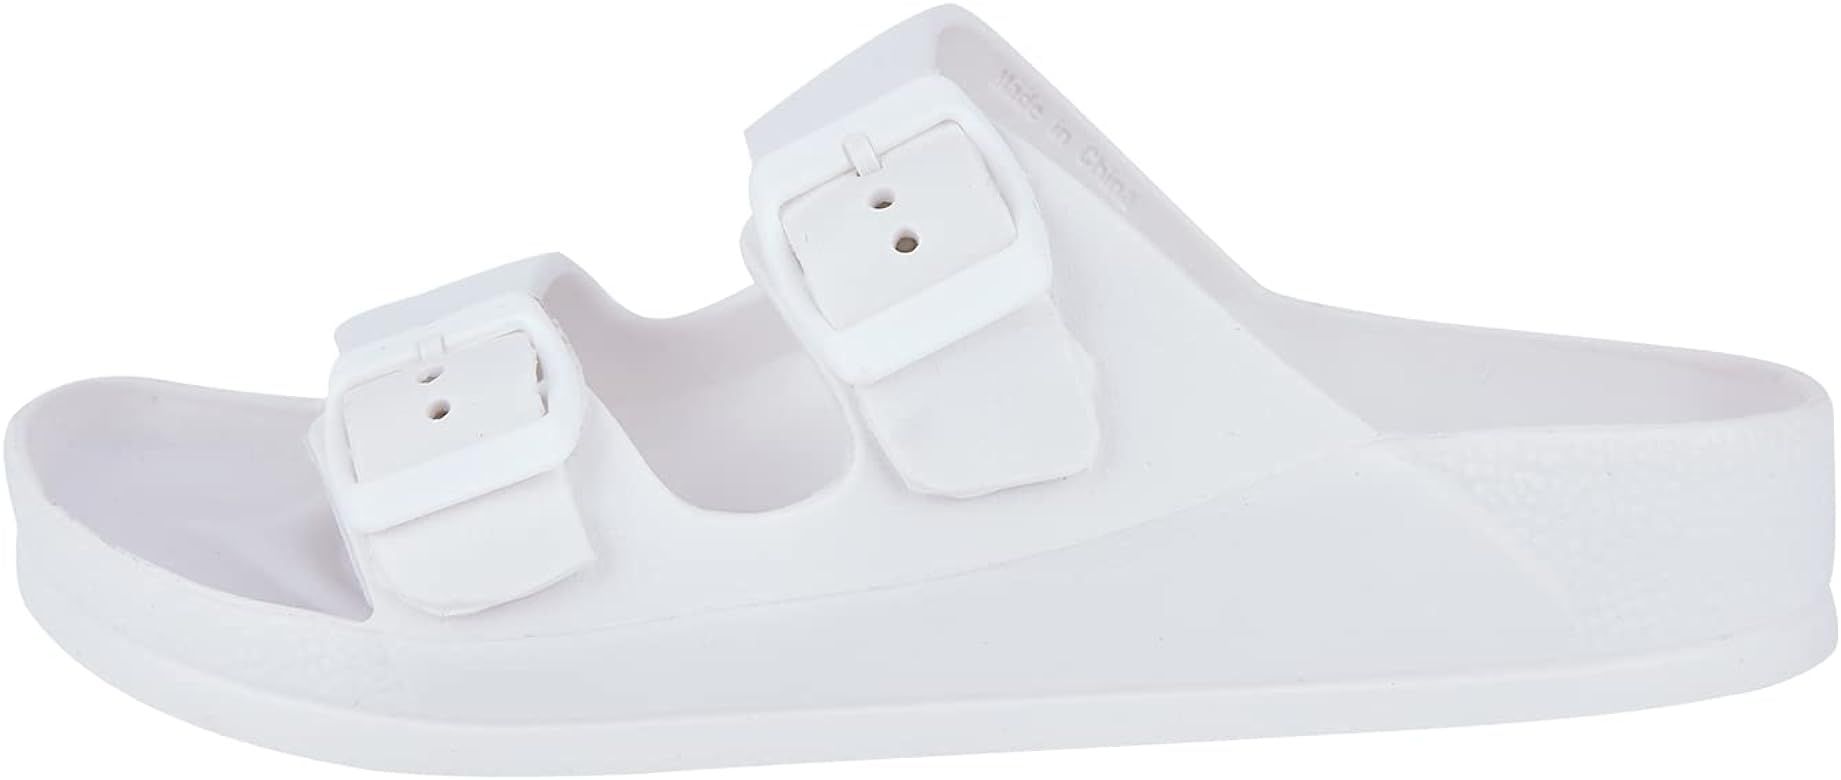 Women's Comfort Slides Sandals Double Buckle Adjustable EVA Flat Sandals | Amazon (CA)